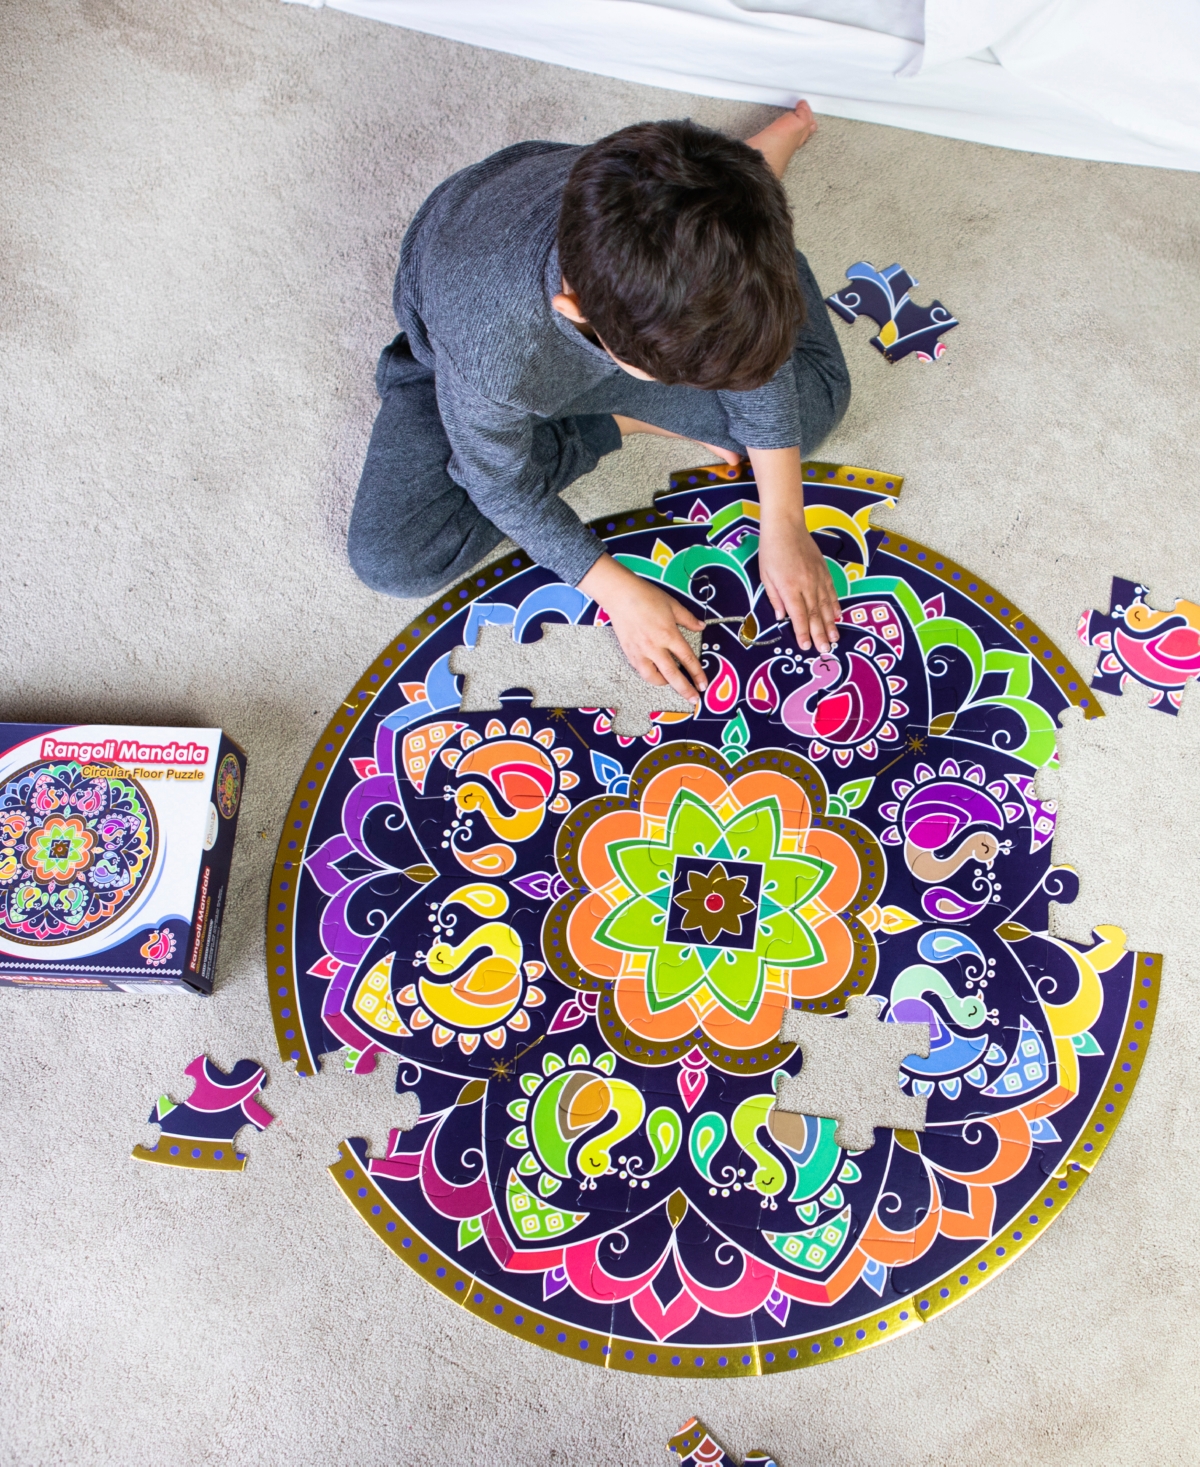 Shop Kulture Khazana Rangoli Mandala Circular Floor Puzzle, 48 Pieces In Mutli